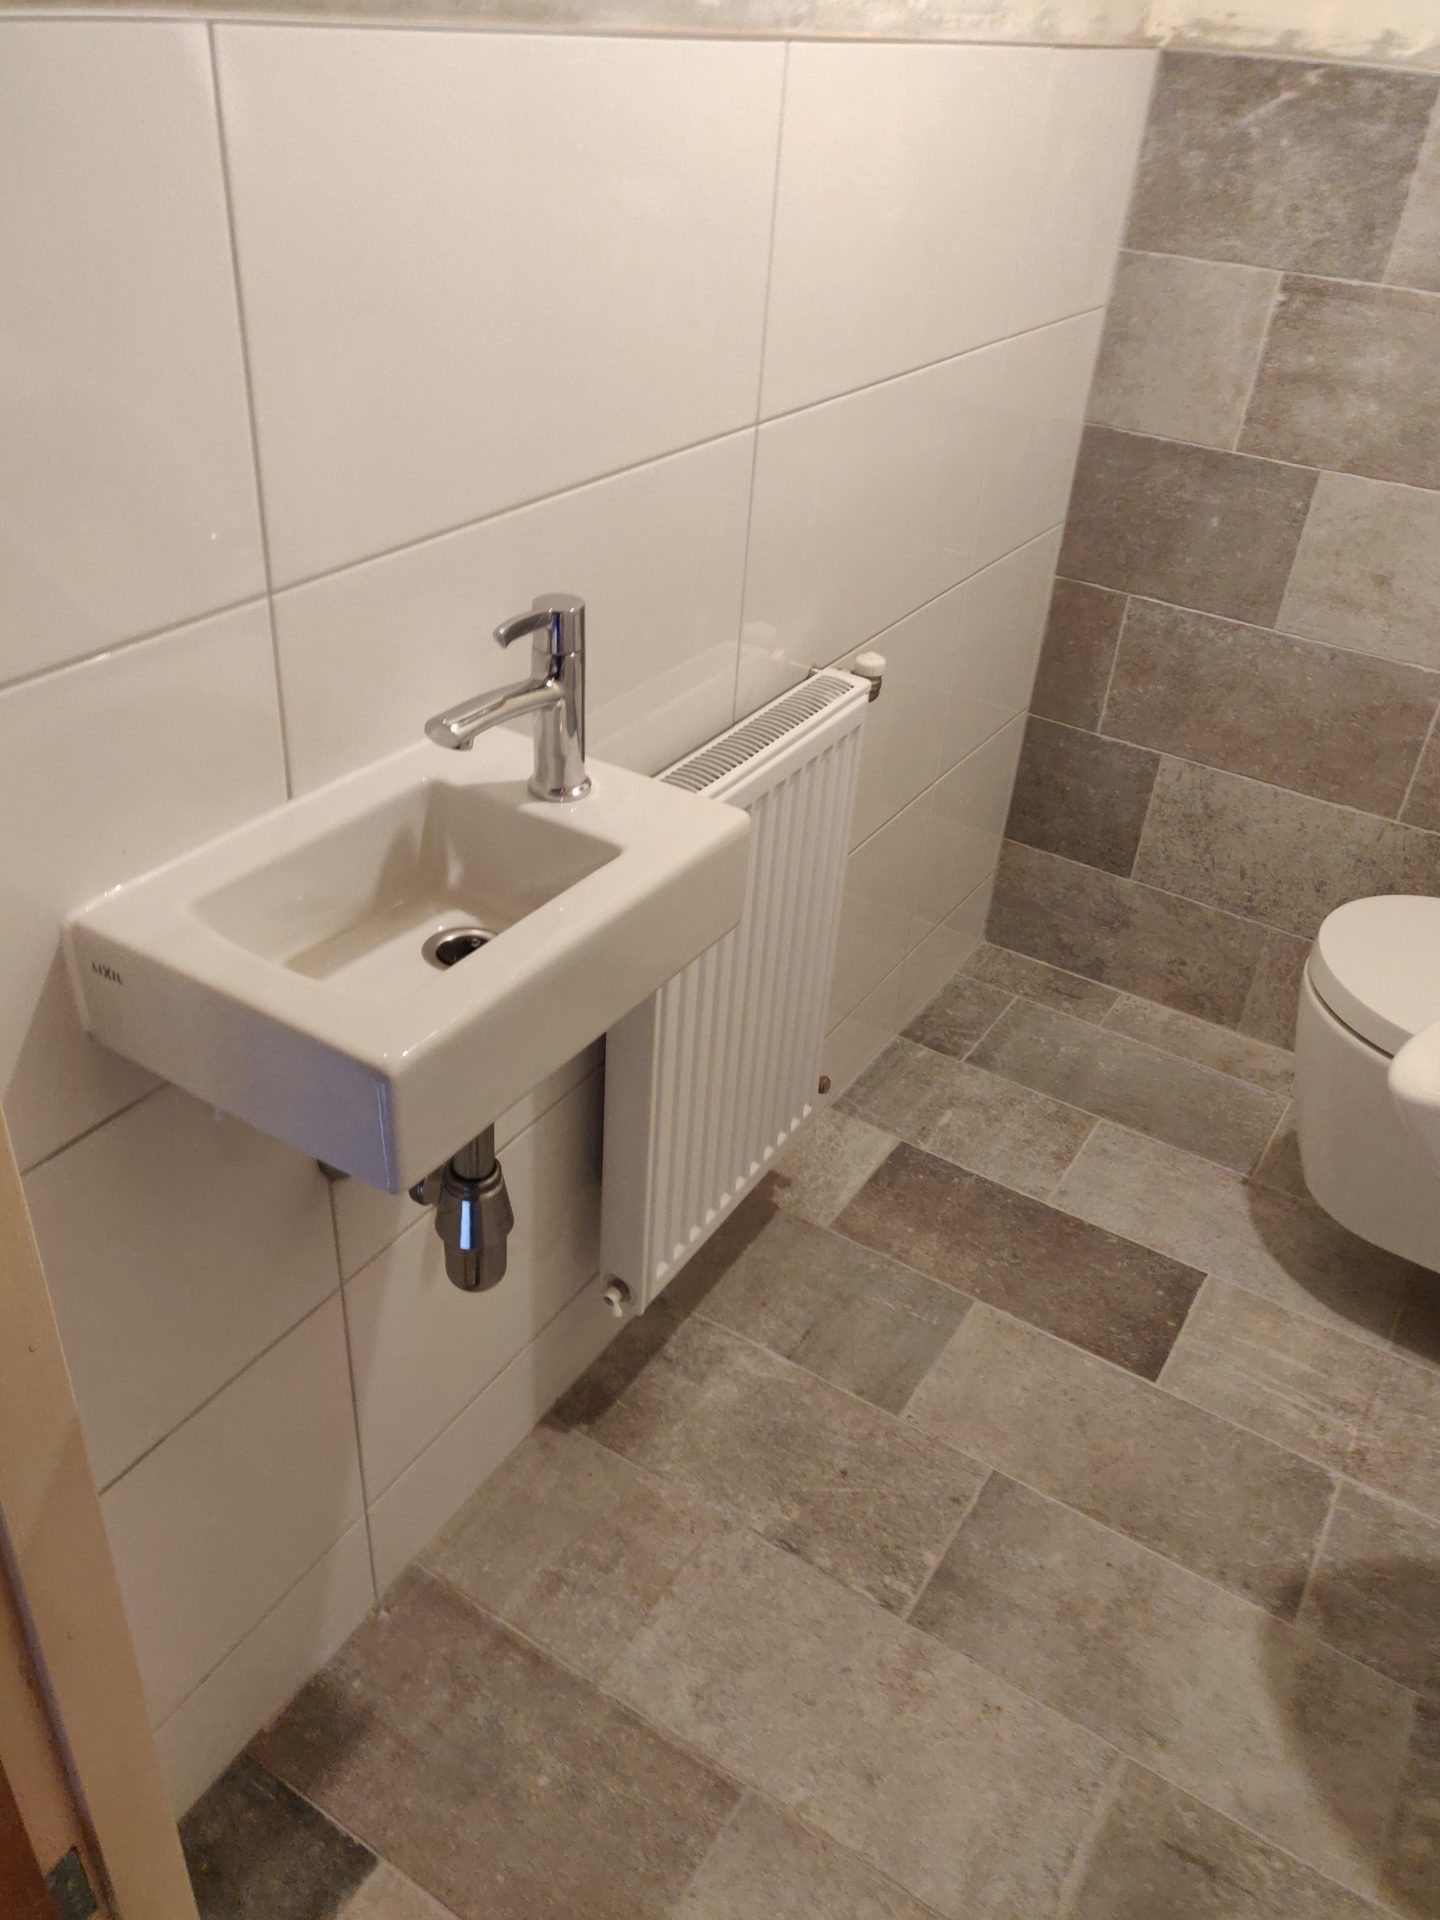 Sneeuwstorm Roei uit niet voldoende bovenaanzicht ontwerp toilet en urinoir - Klein Hesselink Service